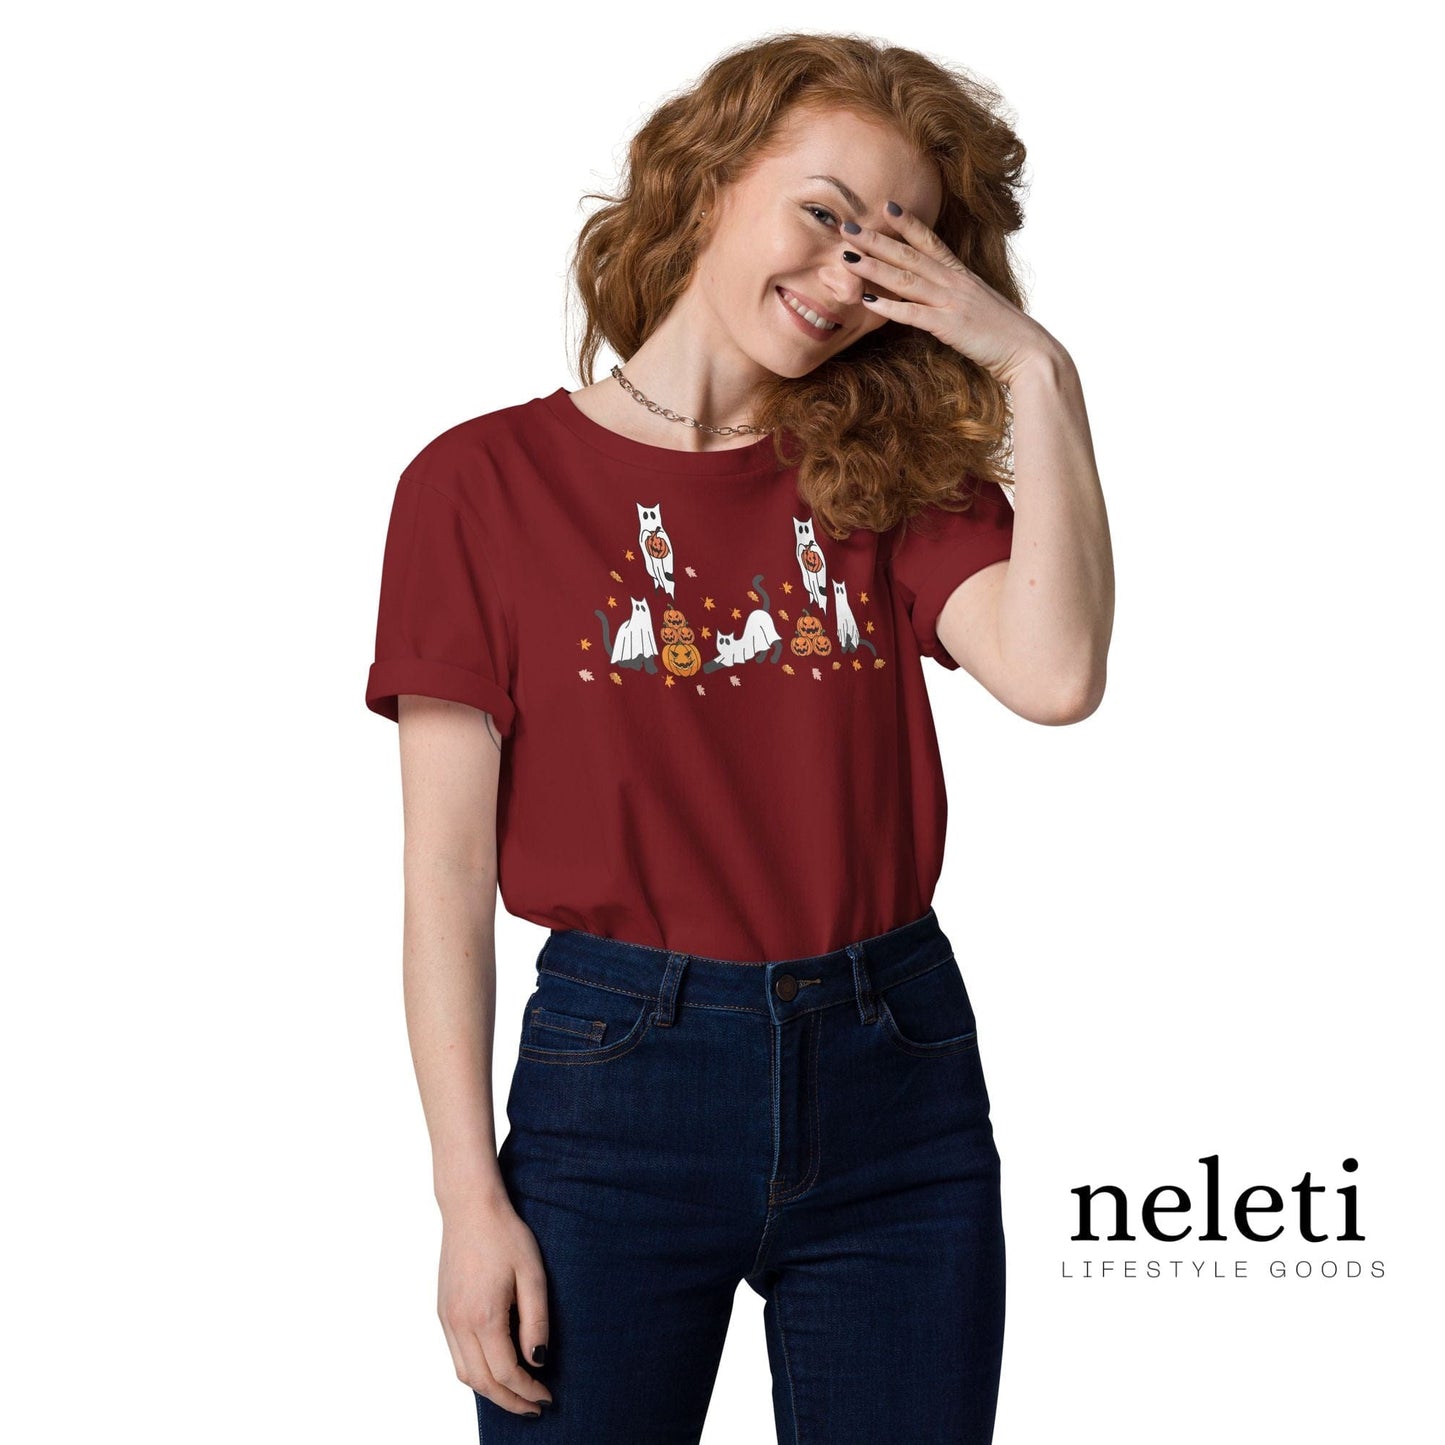 neleti.com-halloween-burgundy-shirt-for-cat-lover